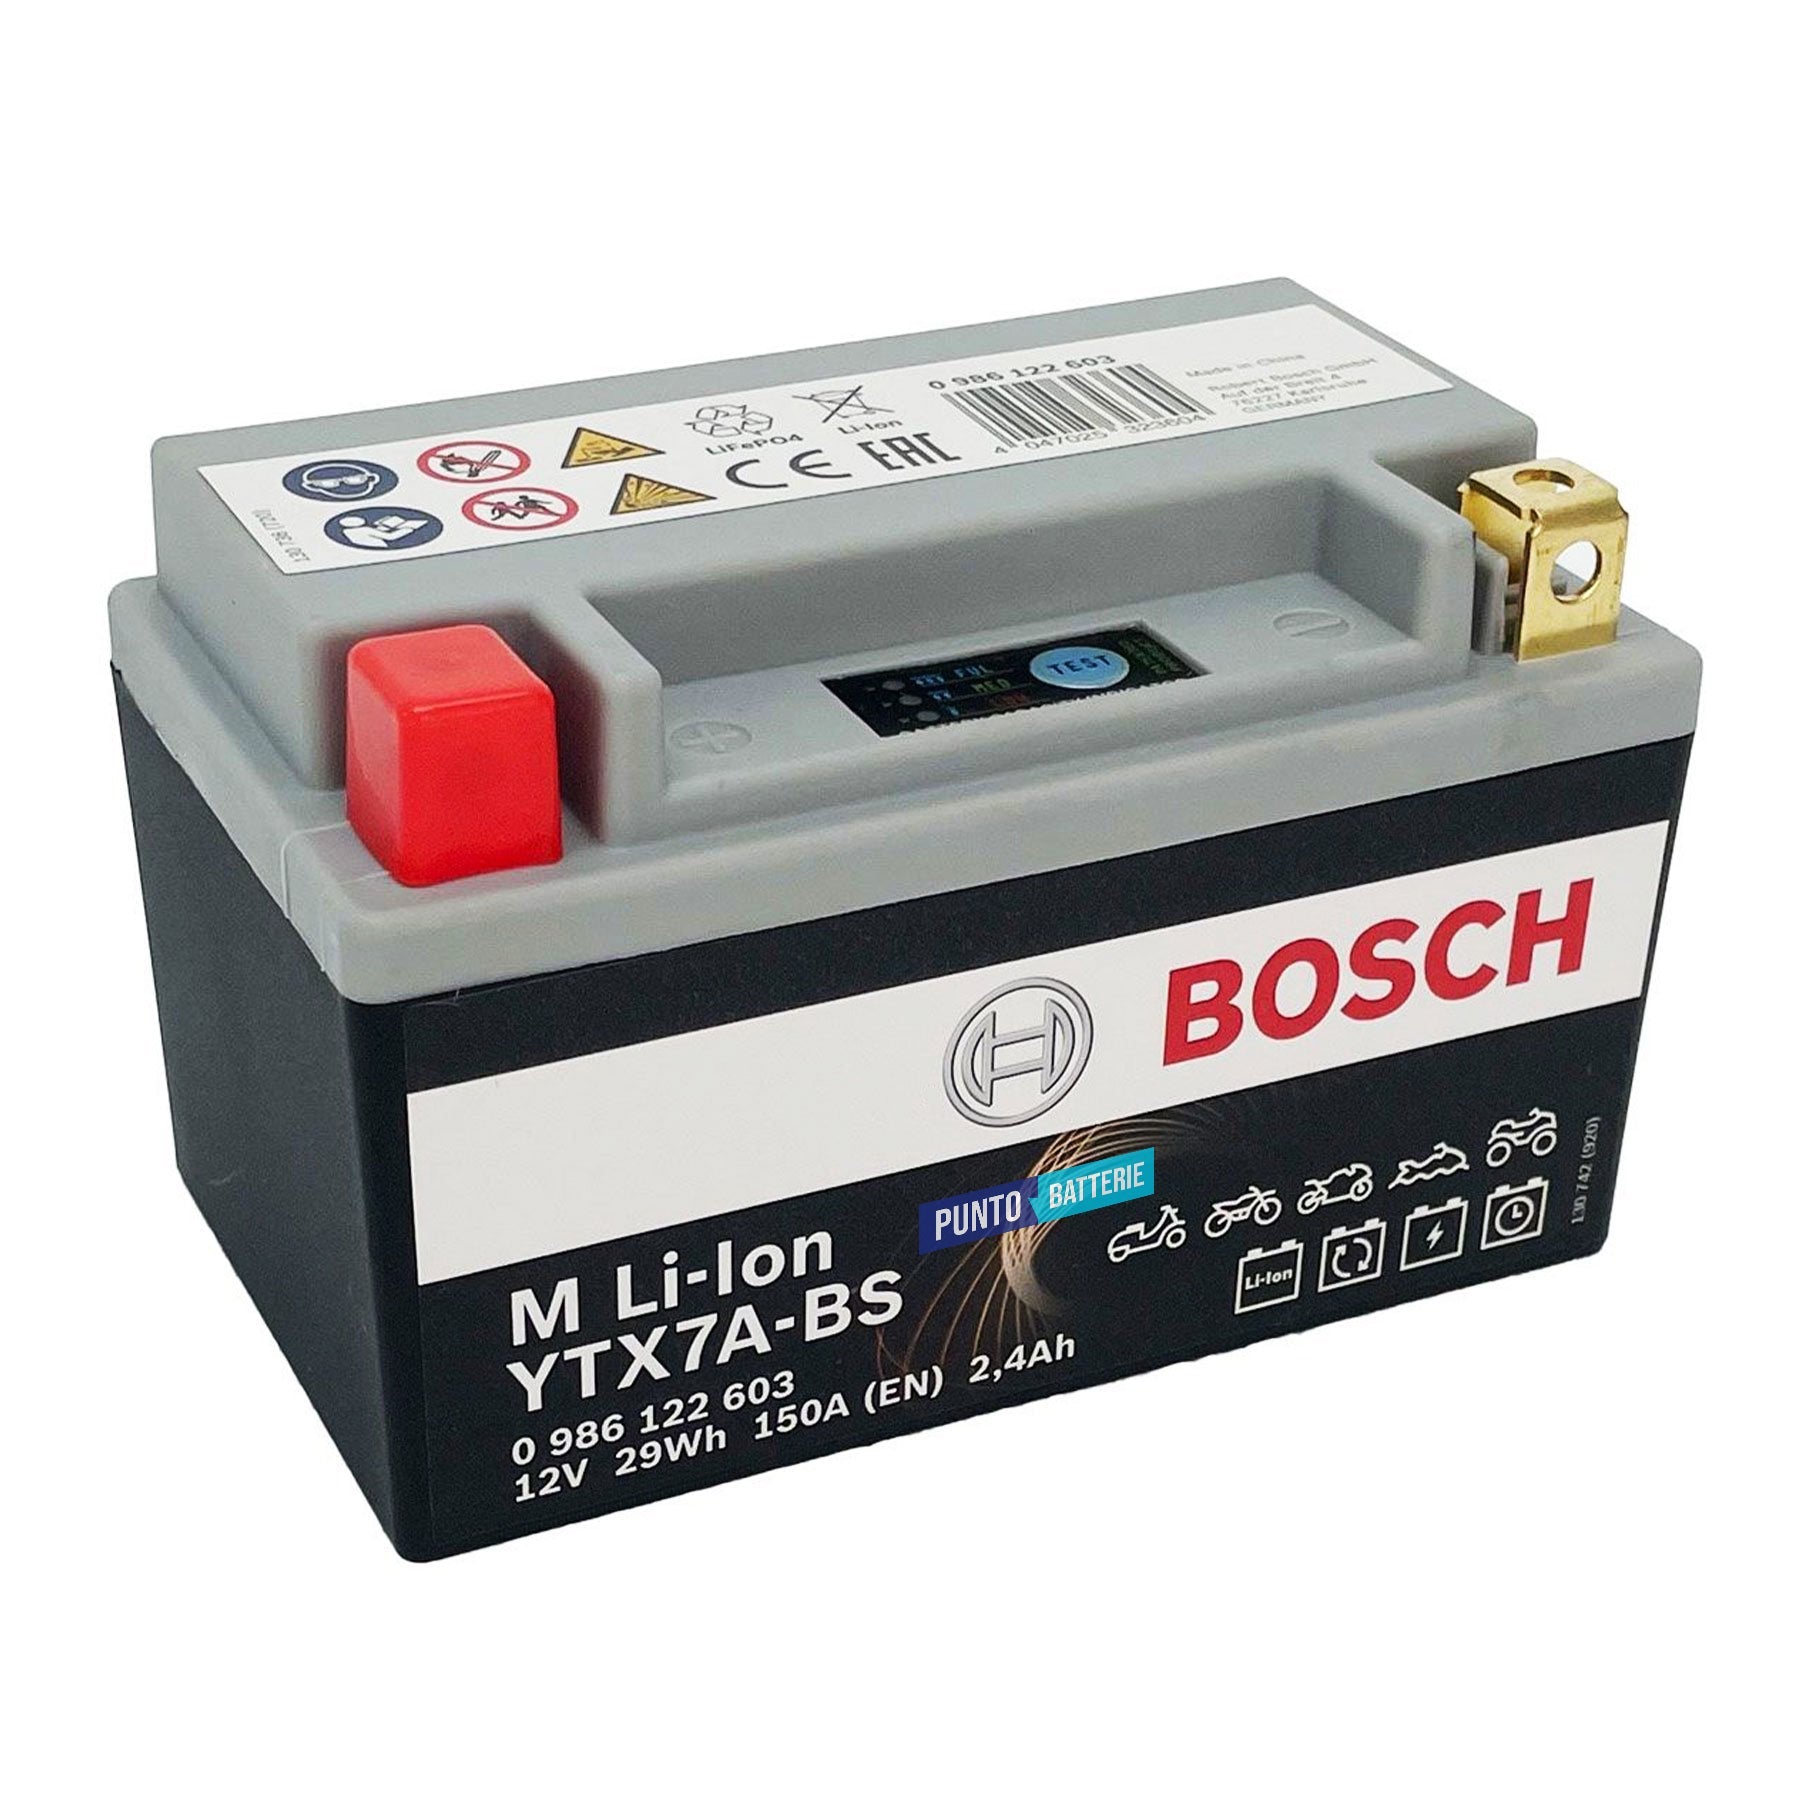 Batteria originale Bosch M Li-ion LTX7A-BS, dimensioni 150 x 87 x 164, polo positivo a sinistra, 12 volt, 2 amperora, 150 ampere. Batteria per moto, scooter e powersport.